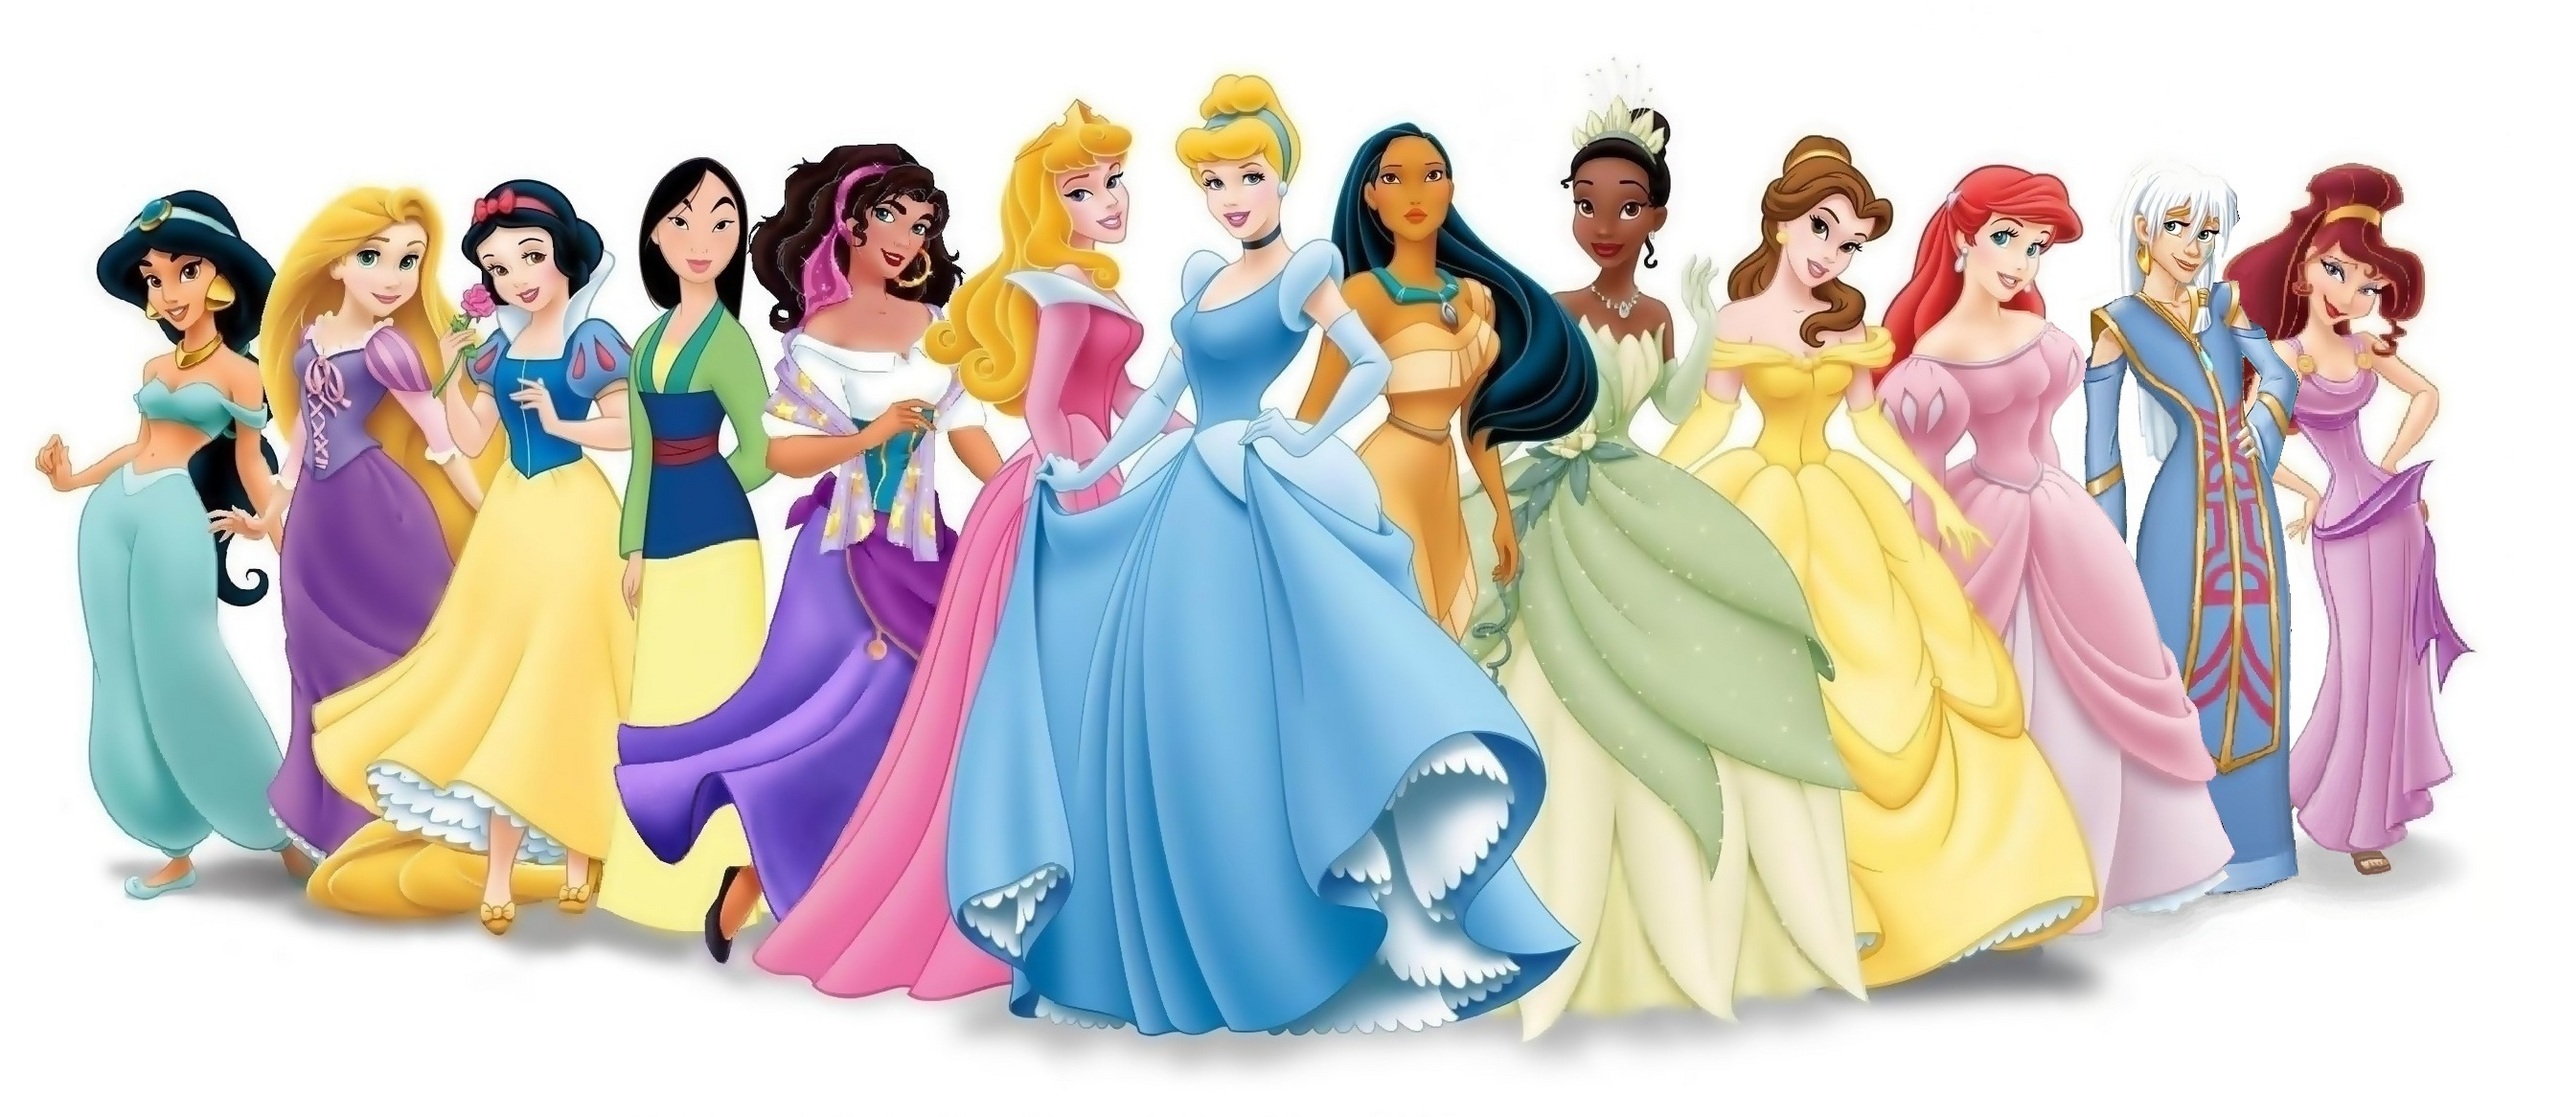 How A California Mom Designed The Ultimate Anti-Disney Princess 